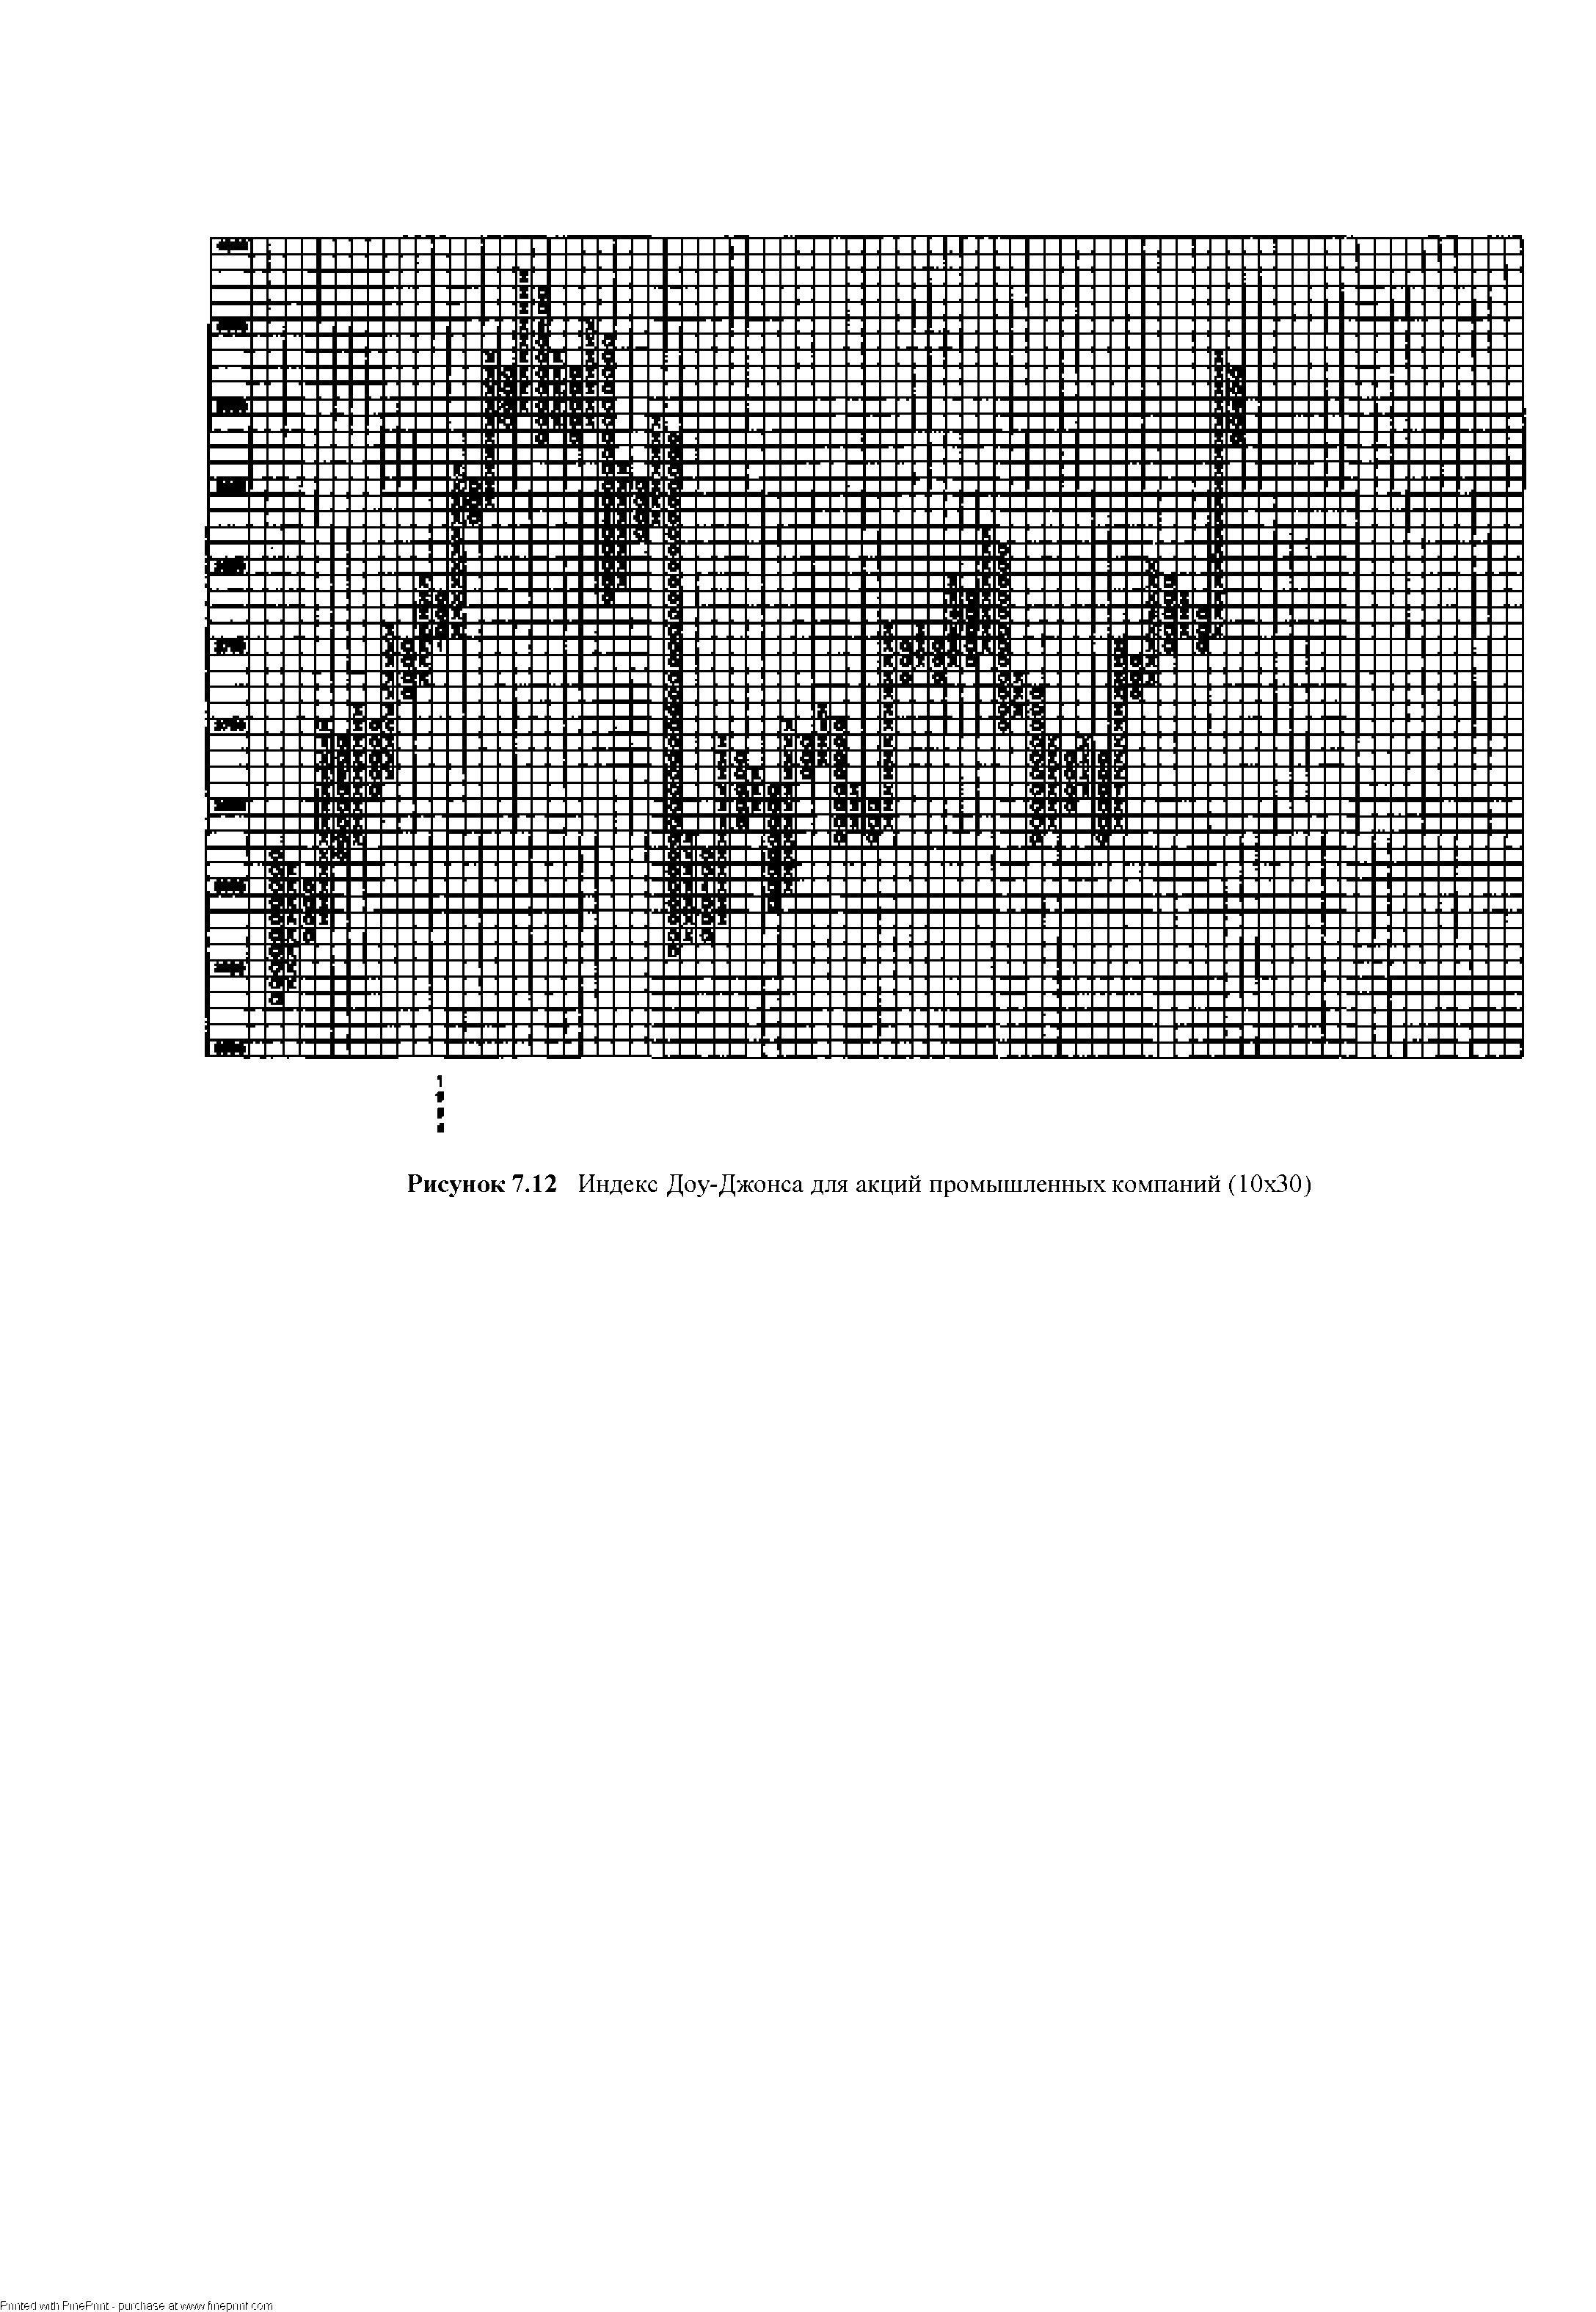 Рисунок 7.12 Индекс Доу-Джонса для акций промышленных компаний (10x30)
